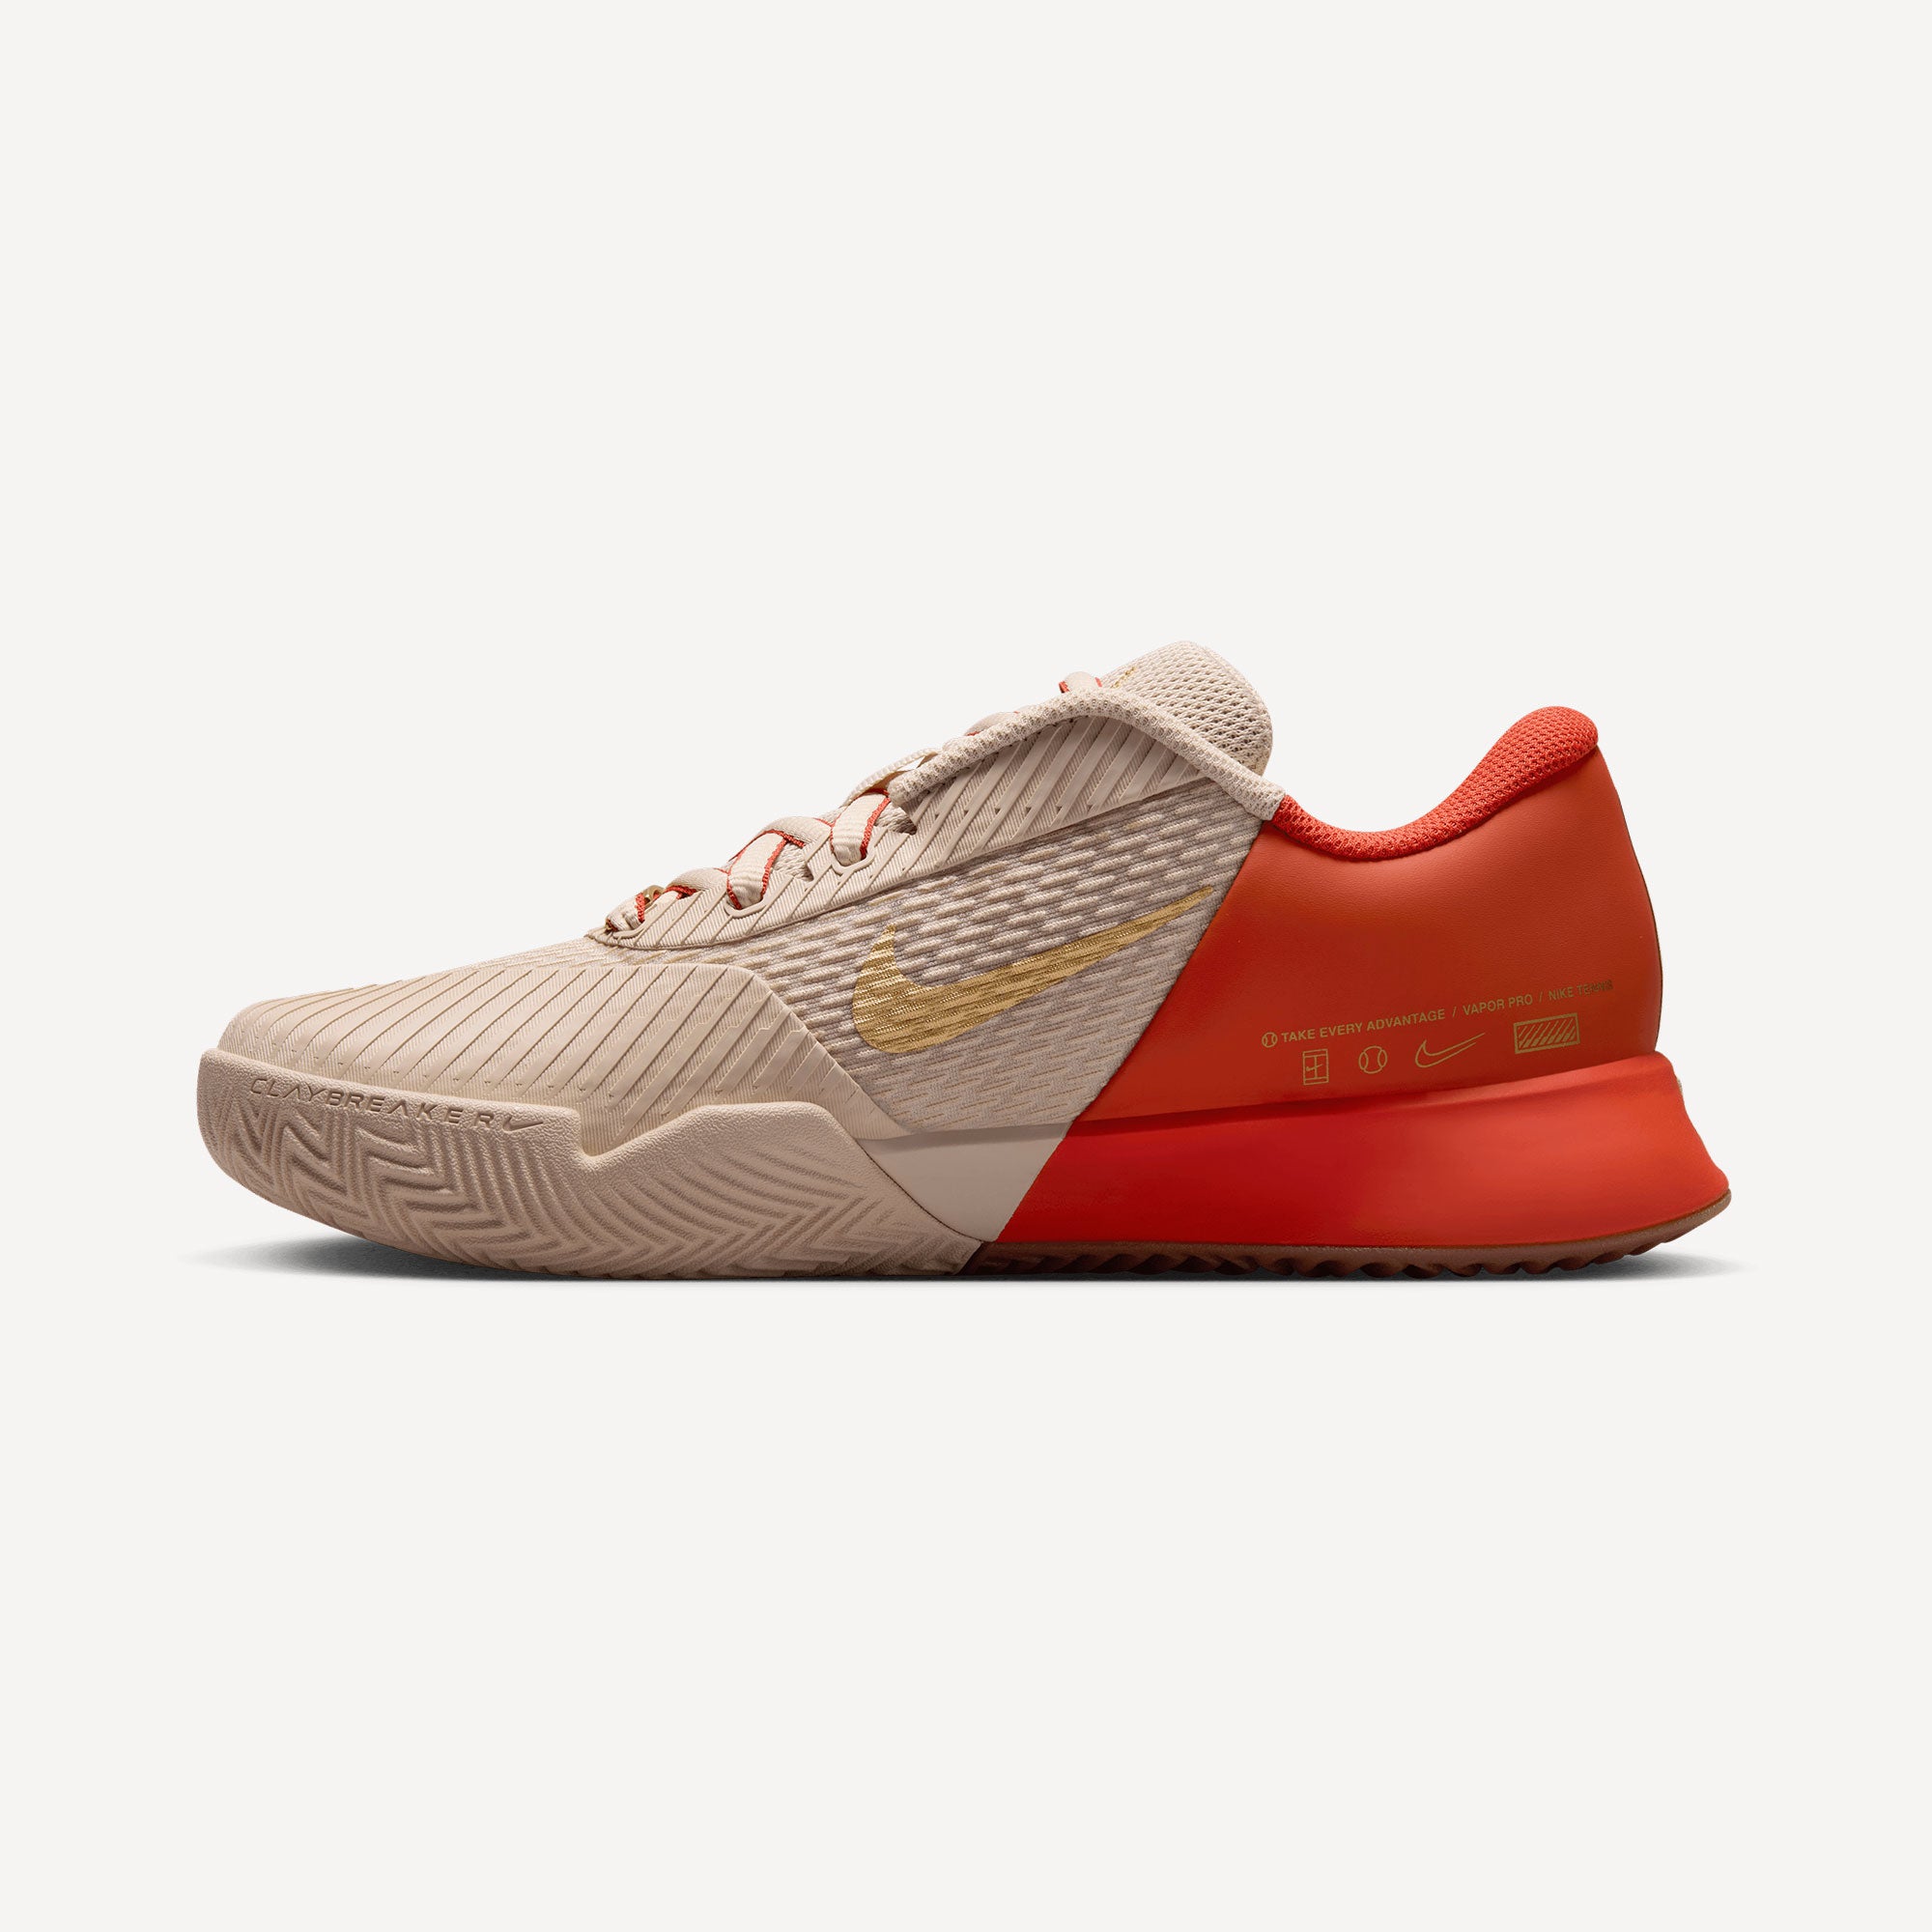 NikeCourt Air Zoom Vapor Pro 2 Premium Women's Clay Court Tennis Shoes - Sand (3)